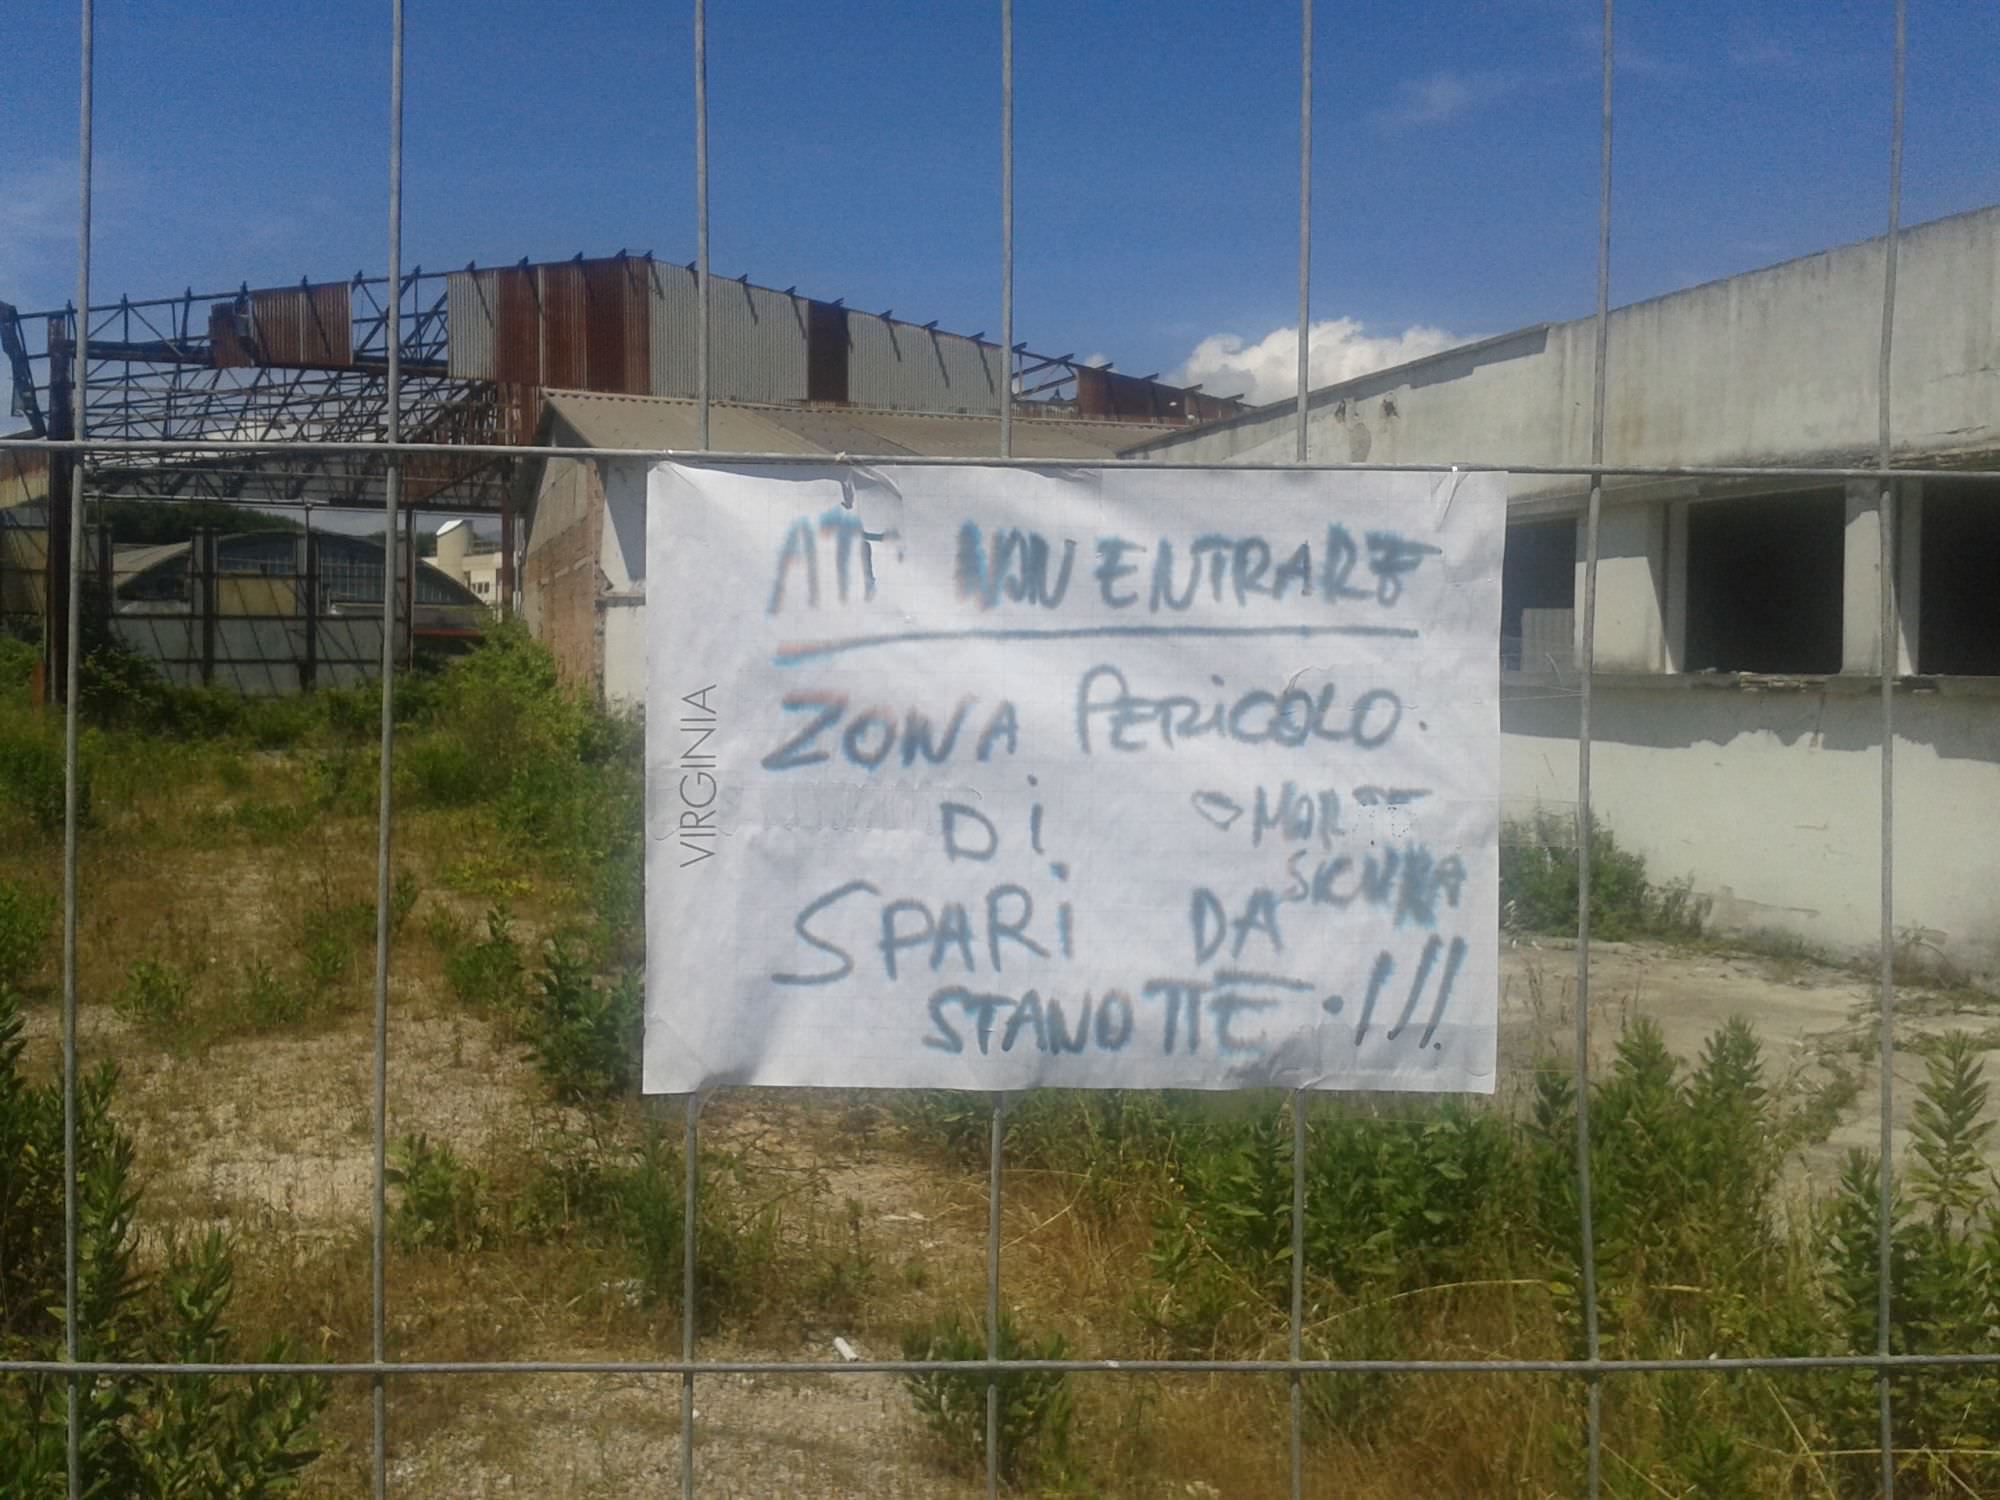 “Non entrare, spari da stanotte”, cartello invita a non occupare rudere al Varignano